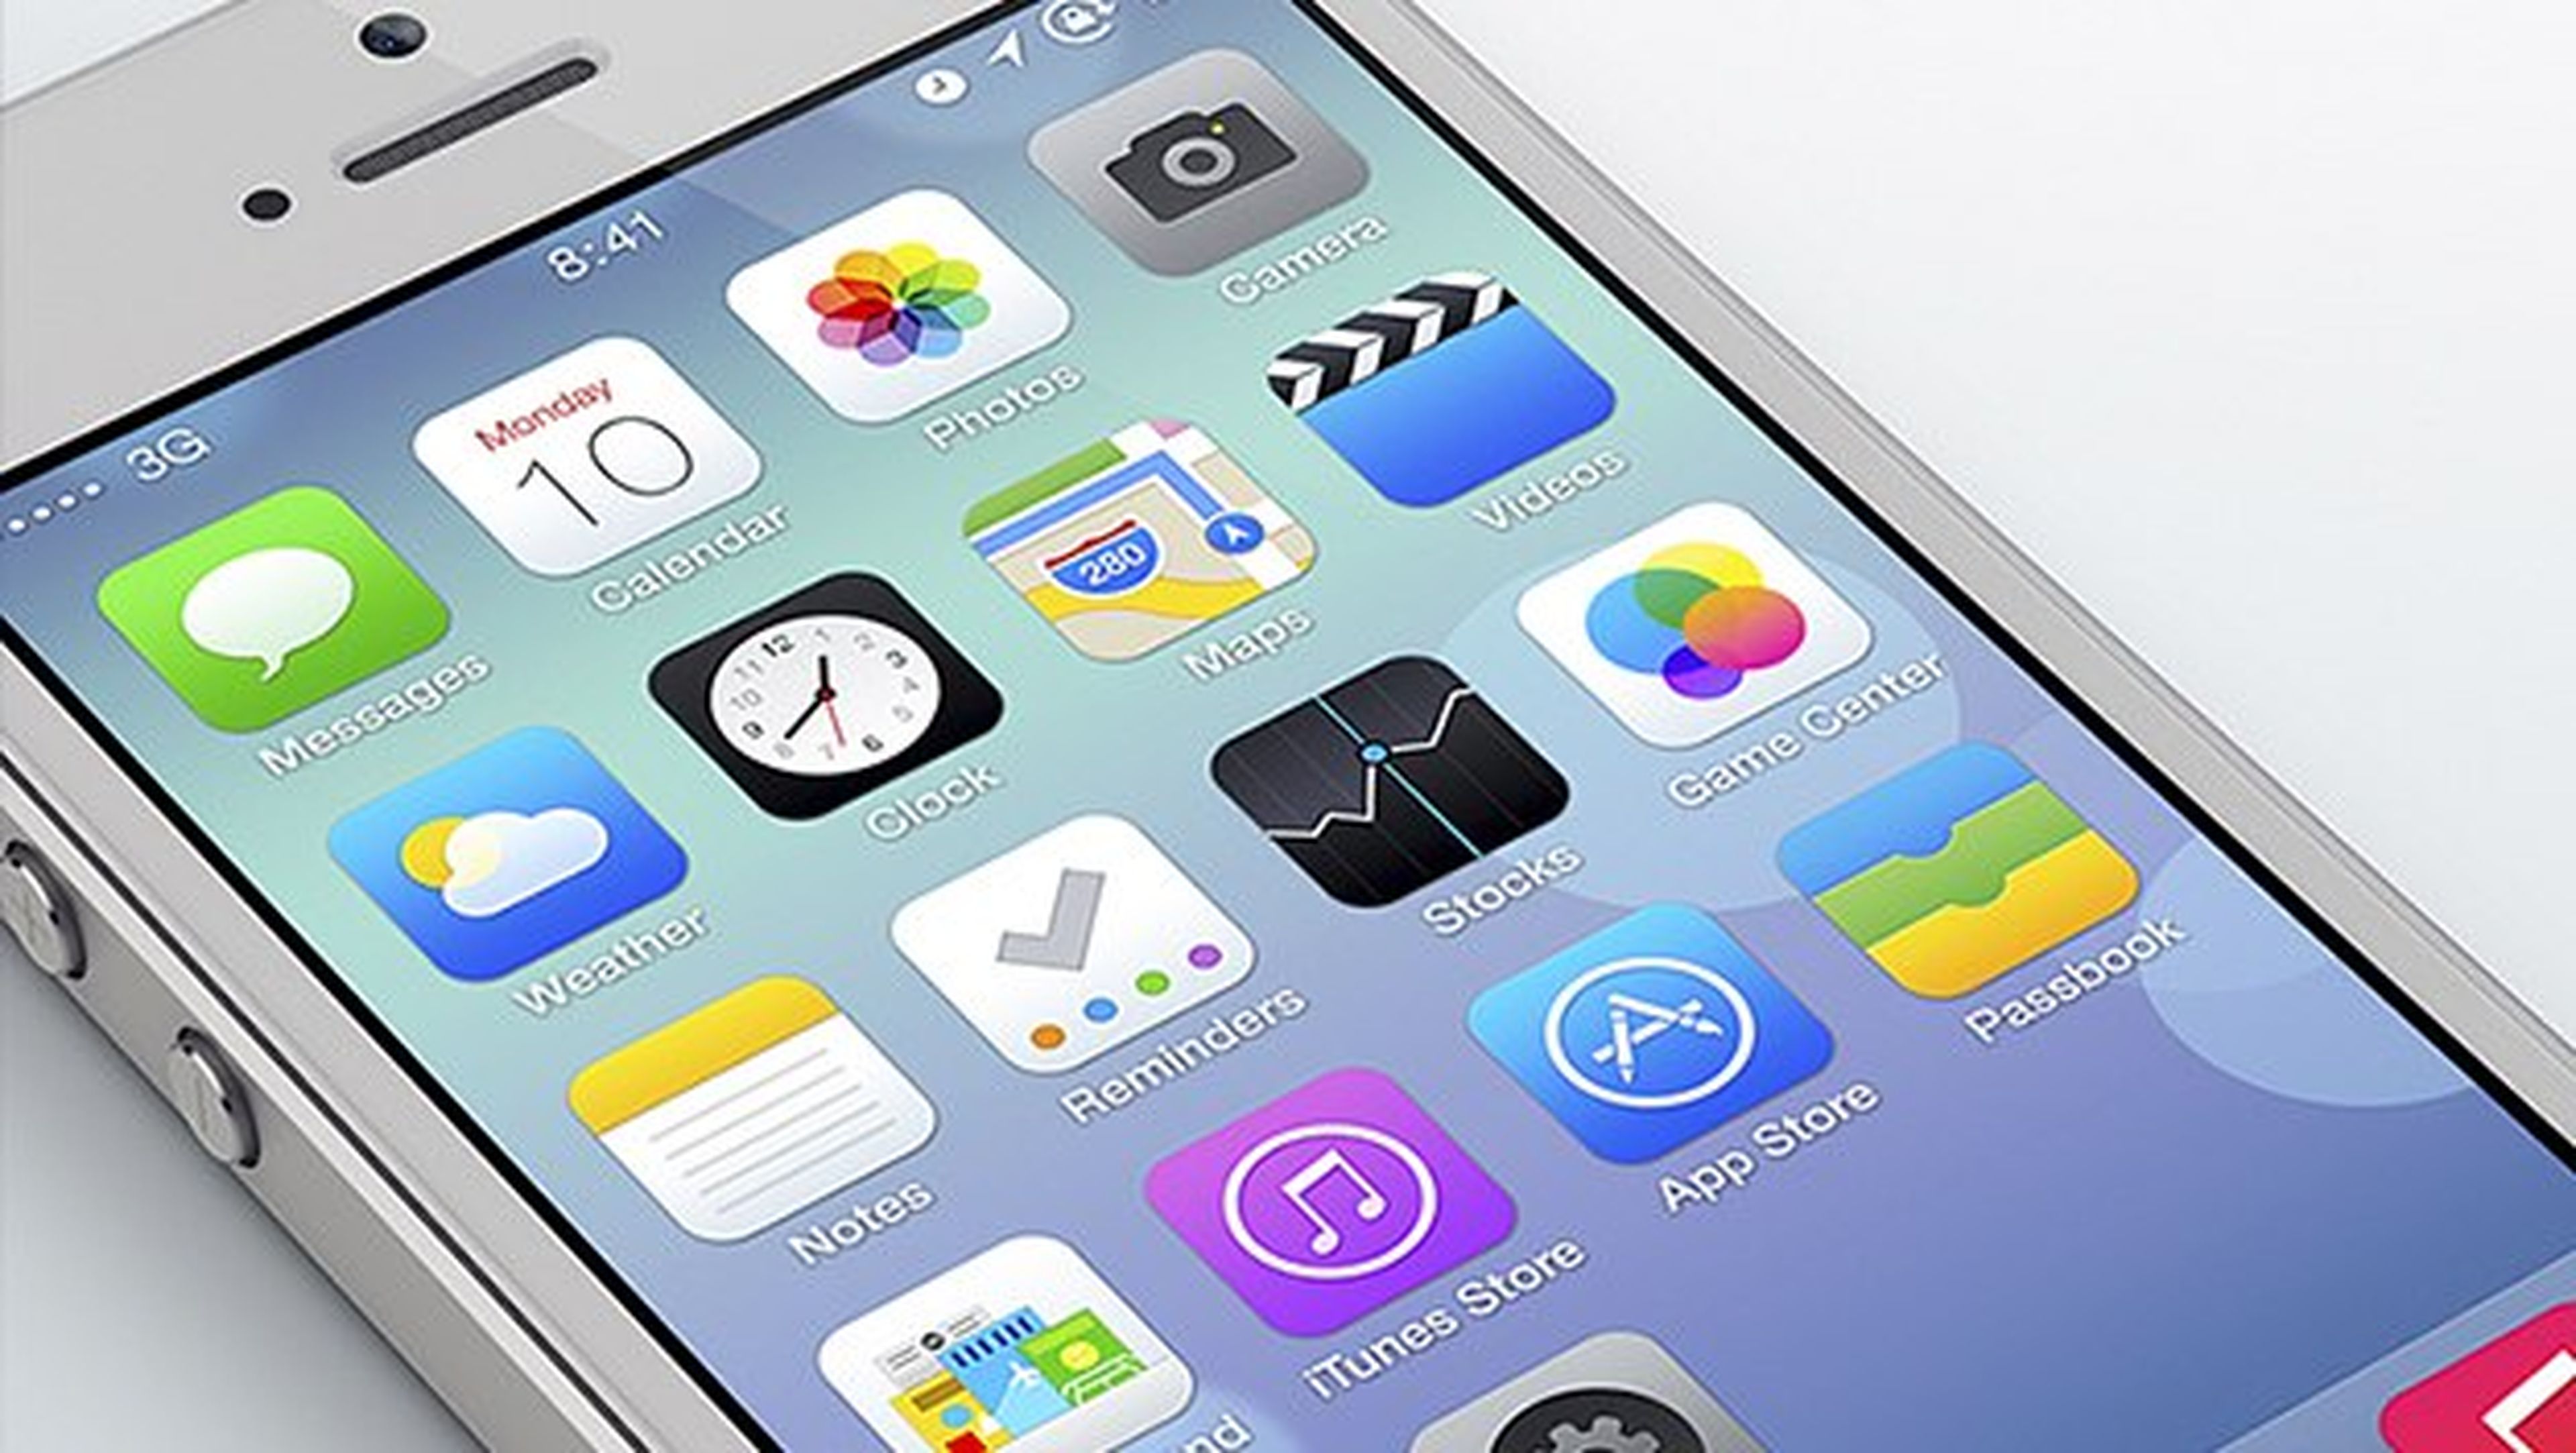 Nuevo fallo de seguridad en iOS 7, ahora en el desbloqueo